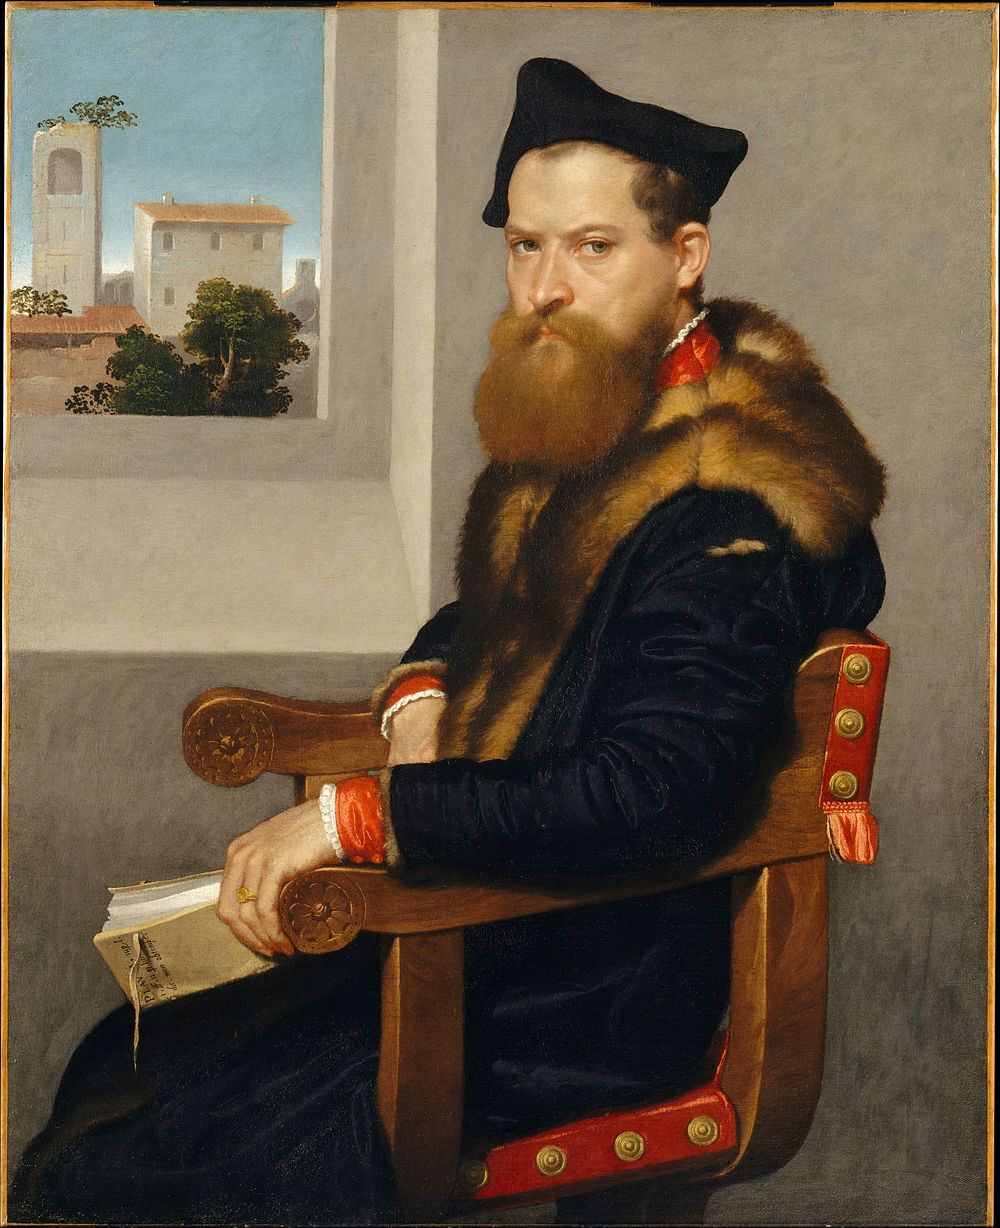 Bartolomeo Bonghi (died 1584) by Giovanni Battista Moroni